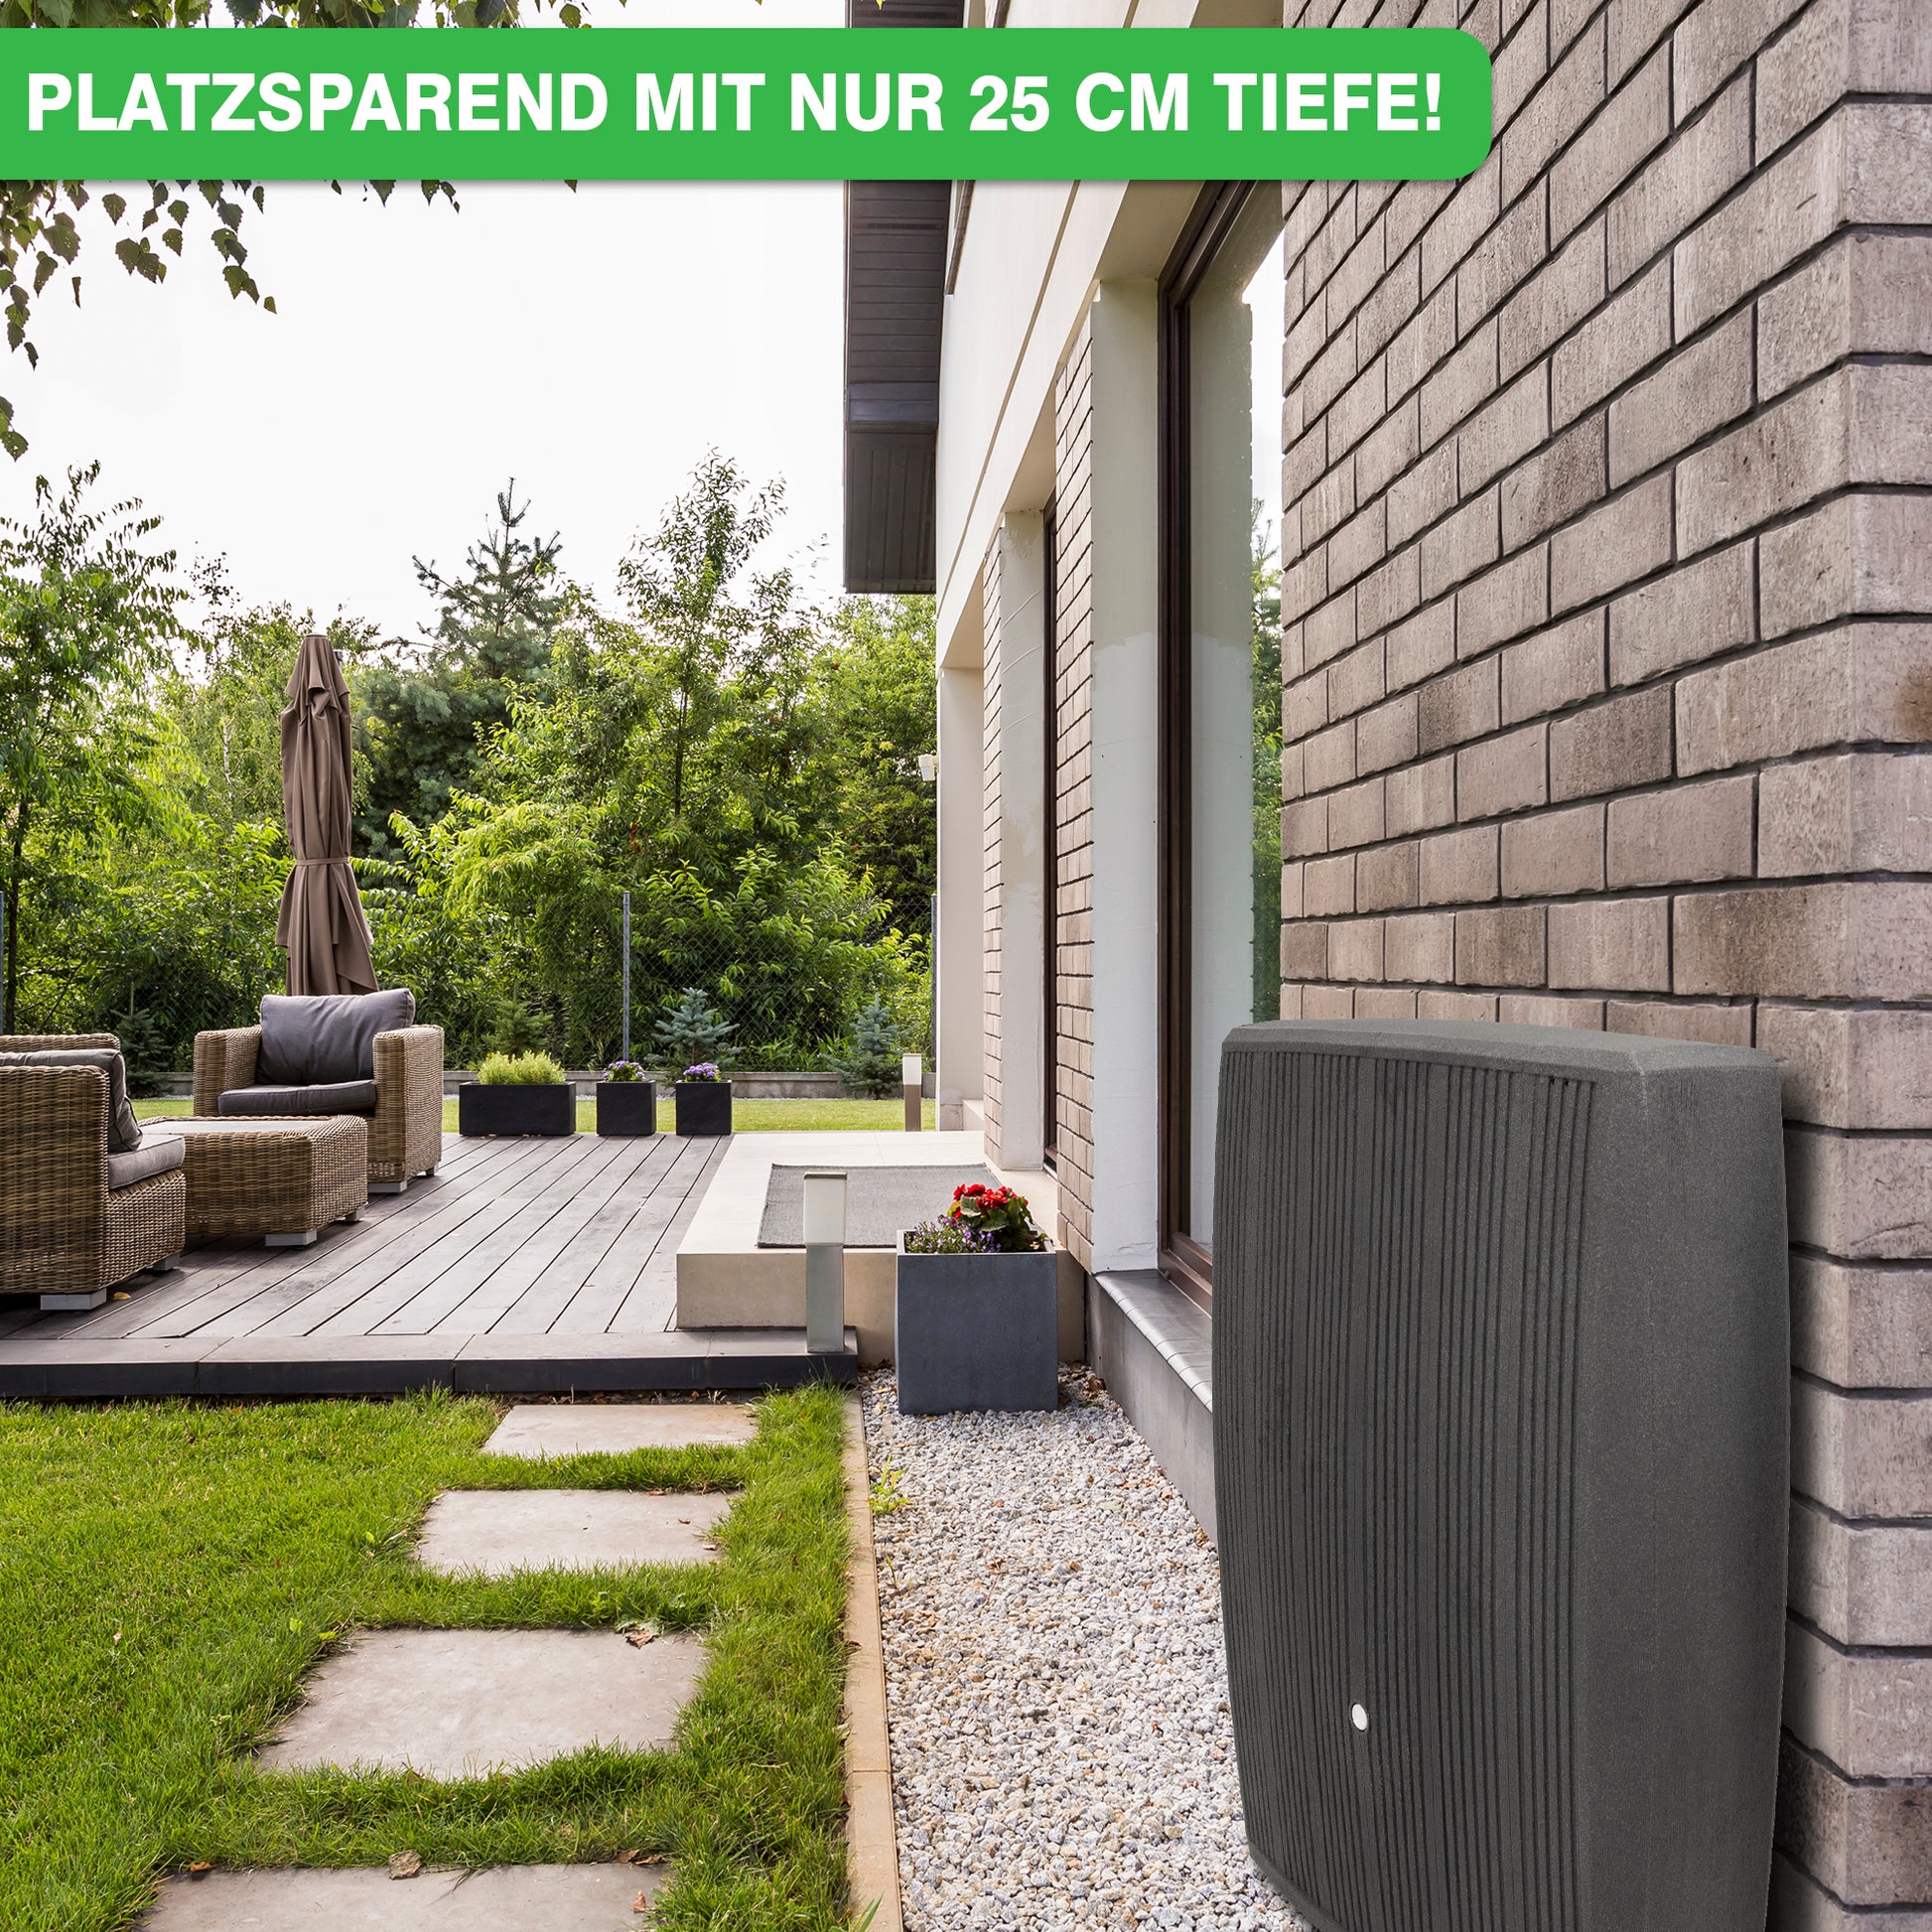 Kompaktes Outdoor Klimagerät neben modernem Haus mit Terrasse, Gartenbereich und YourCasa Regentonne 200 Liter [DualStyle] - Platzsparend & Stilvoll von yourcasa-de.